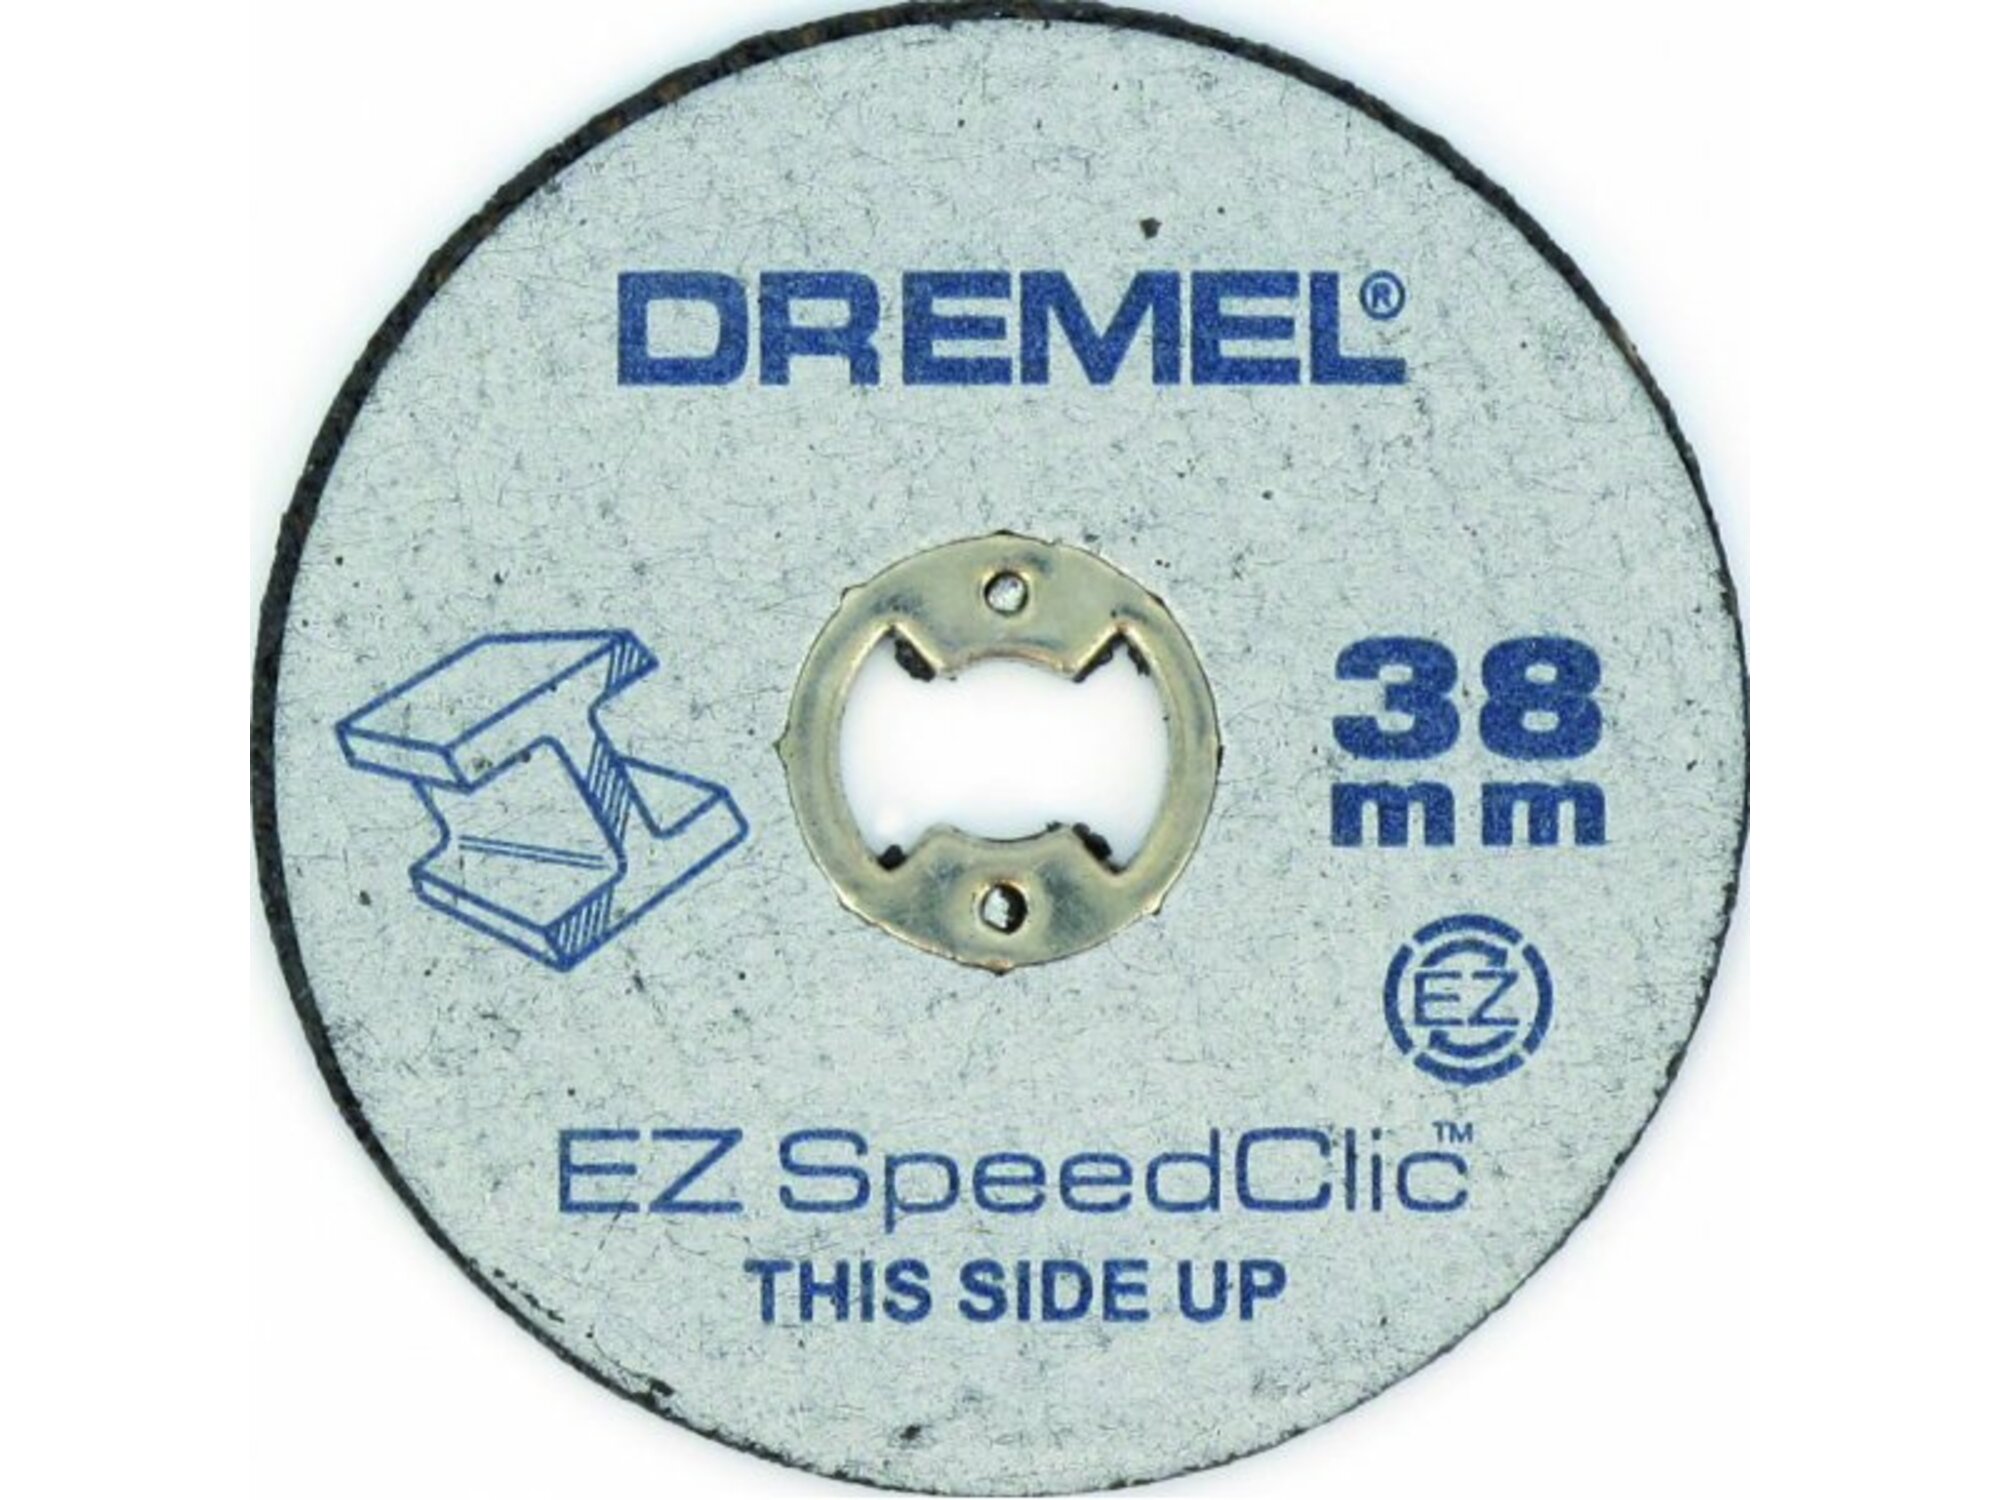 Dremel EZ SpeedClic metalni diskovi za sečenje SC456 2615S456JC